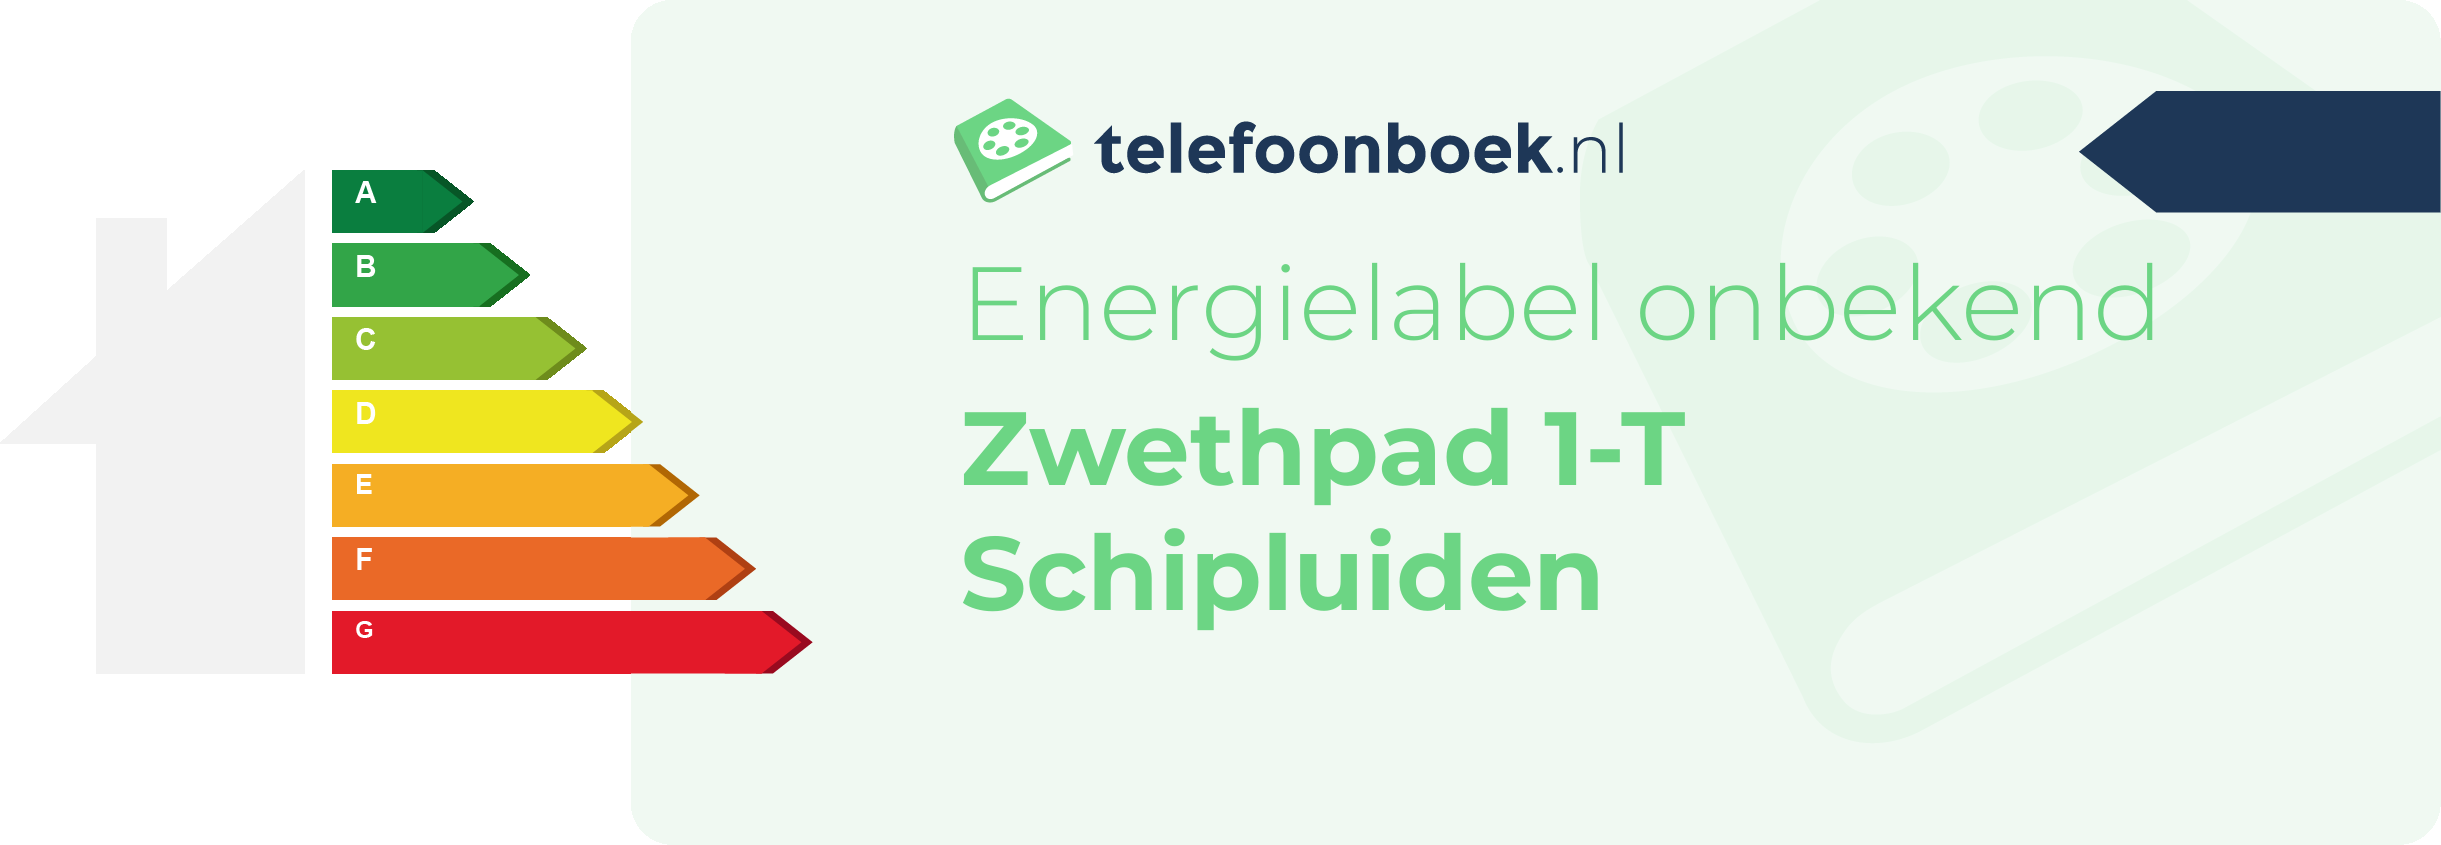 Energielabel Zwethpad 1-T Schipluiden